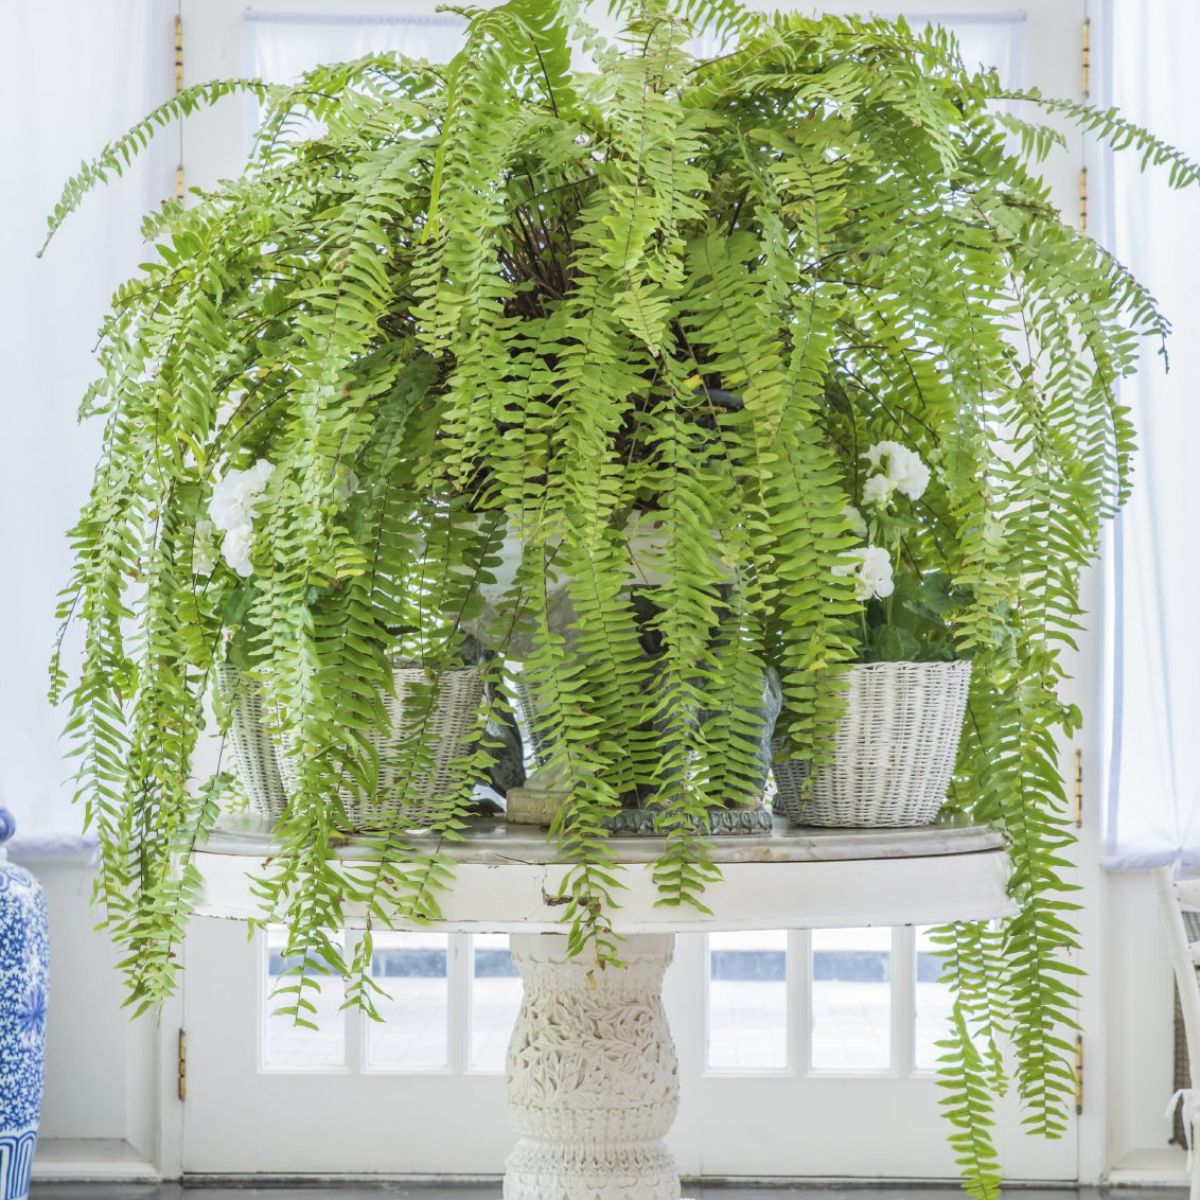 Boston Fern oversized plant for interior decoration on Thursd